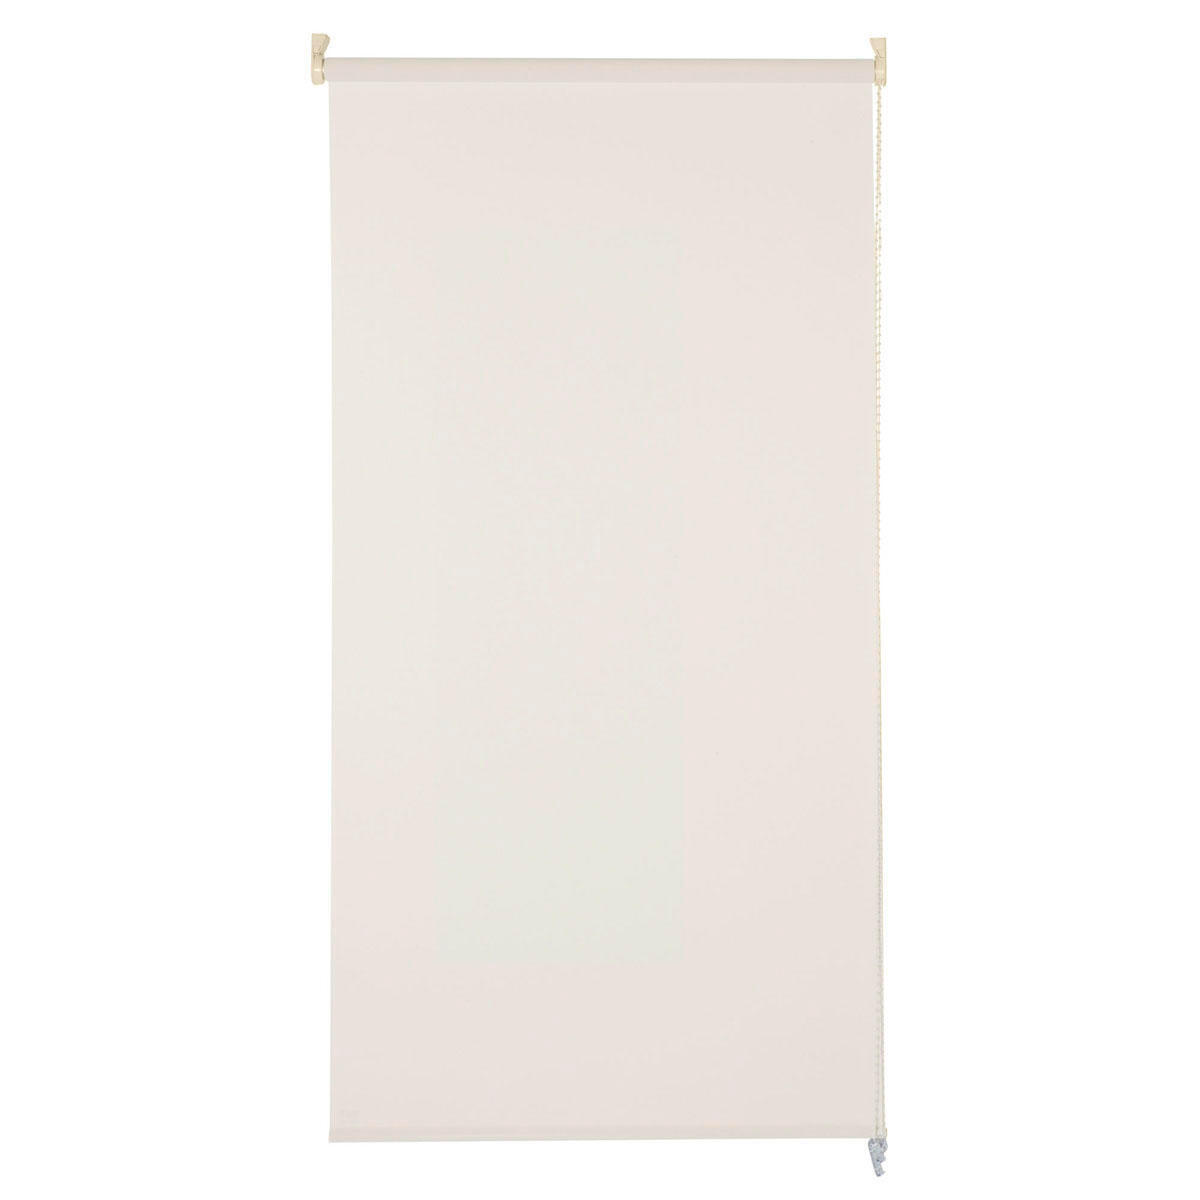 Tenda a rullo filtrante INSPIRE Screen lino 135 x 250 cm - 4